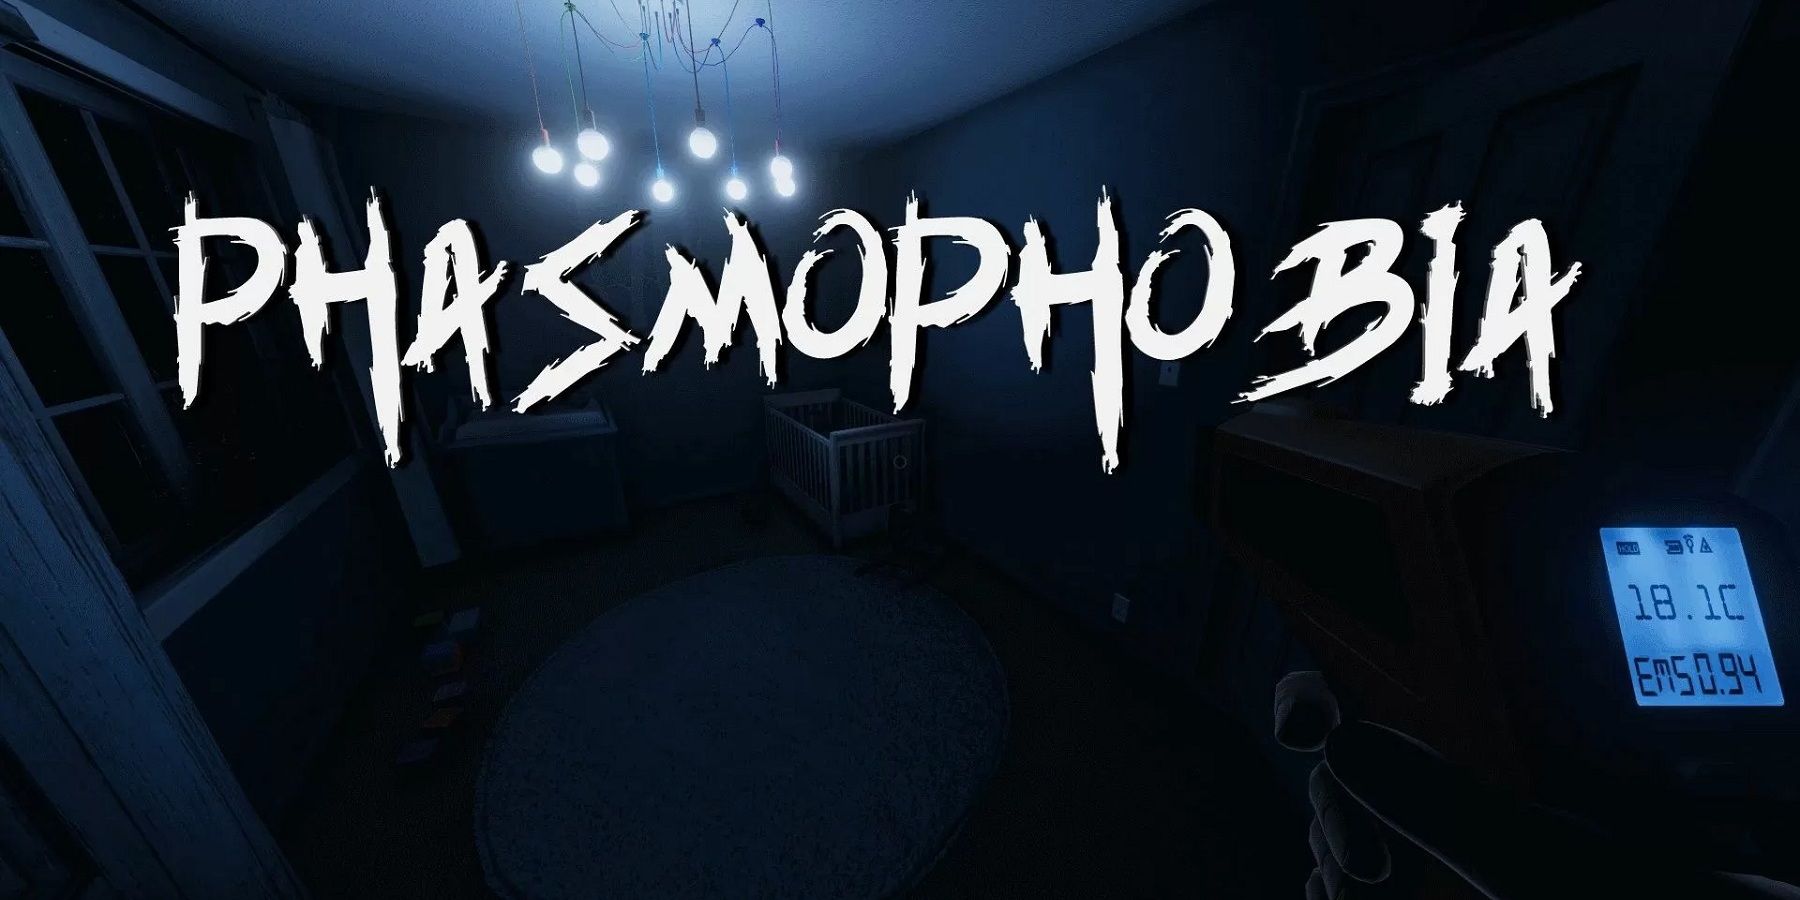 phasmophobia-logo